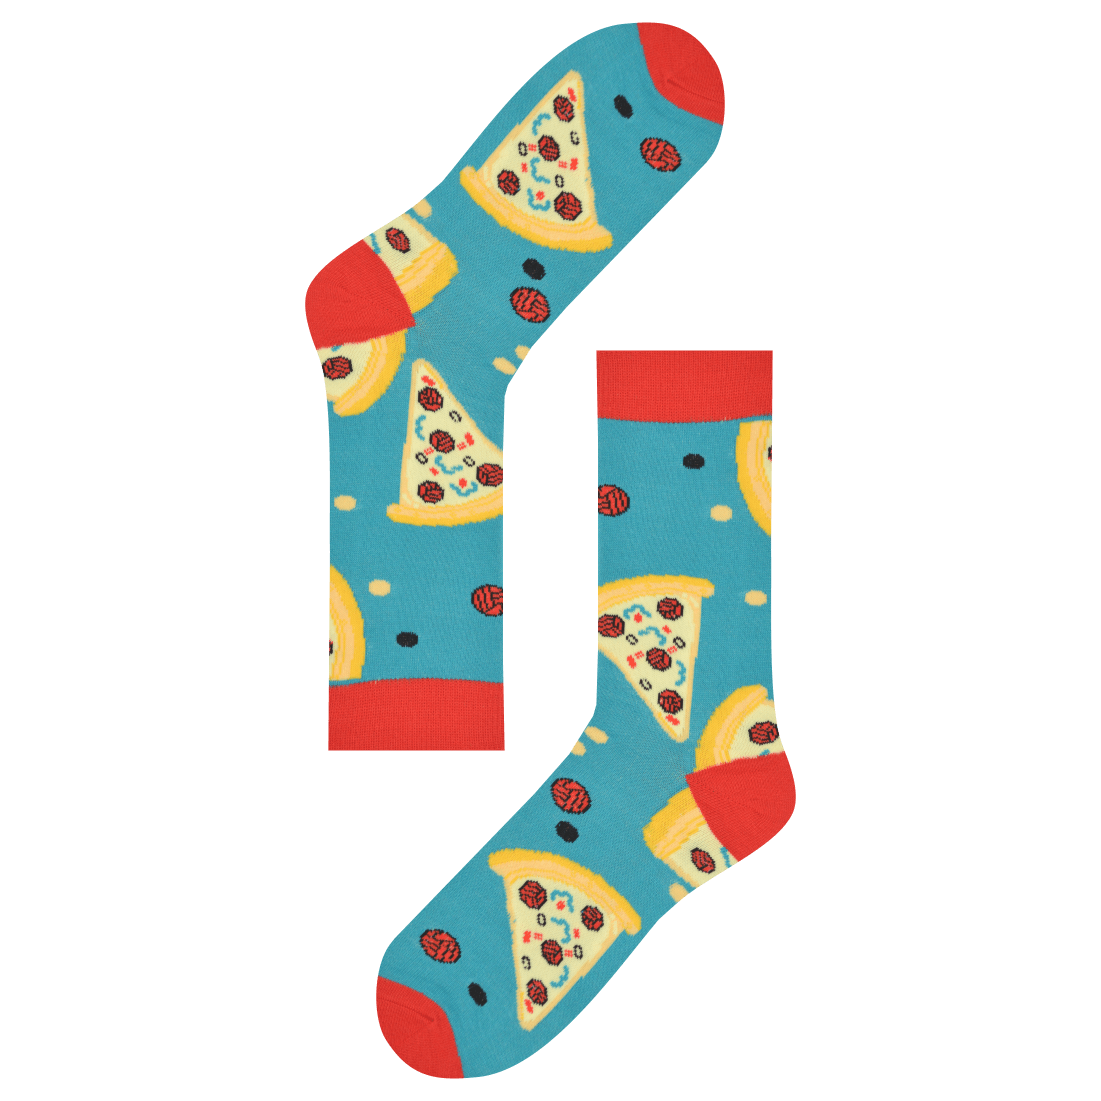 Medias Locas calcetines divertidos de pizza Freaky Socks. medias pizza